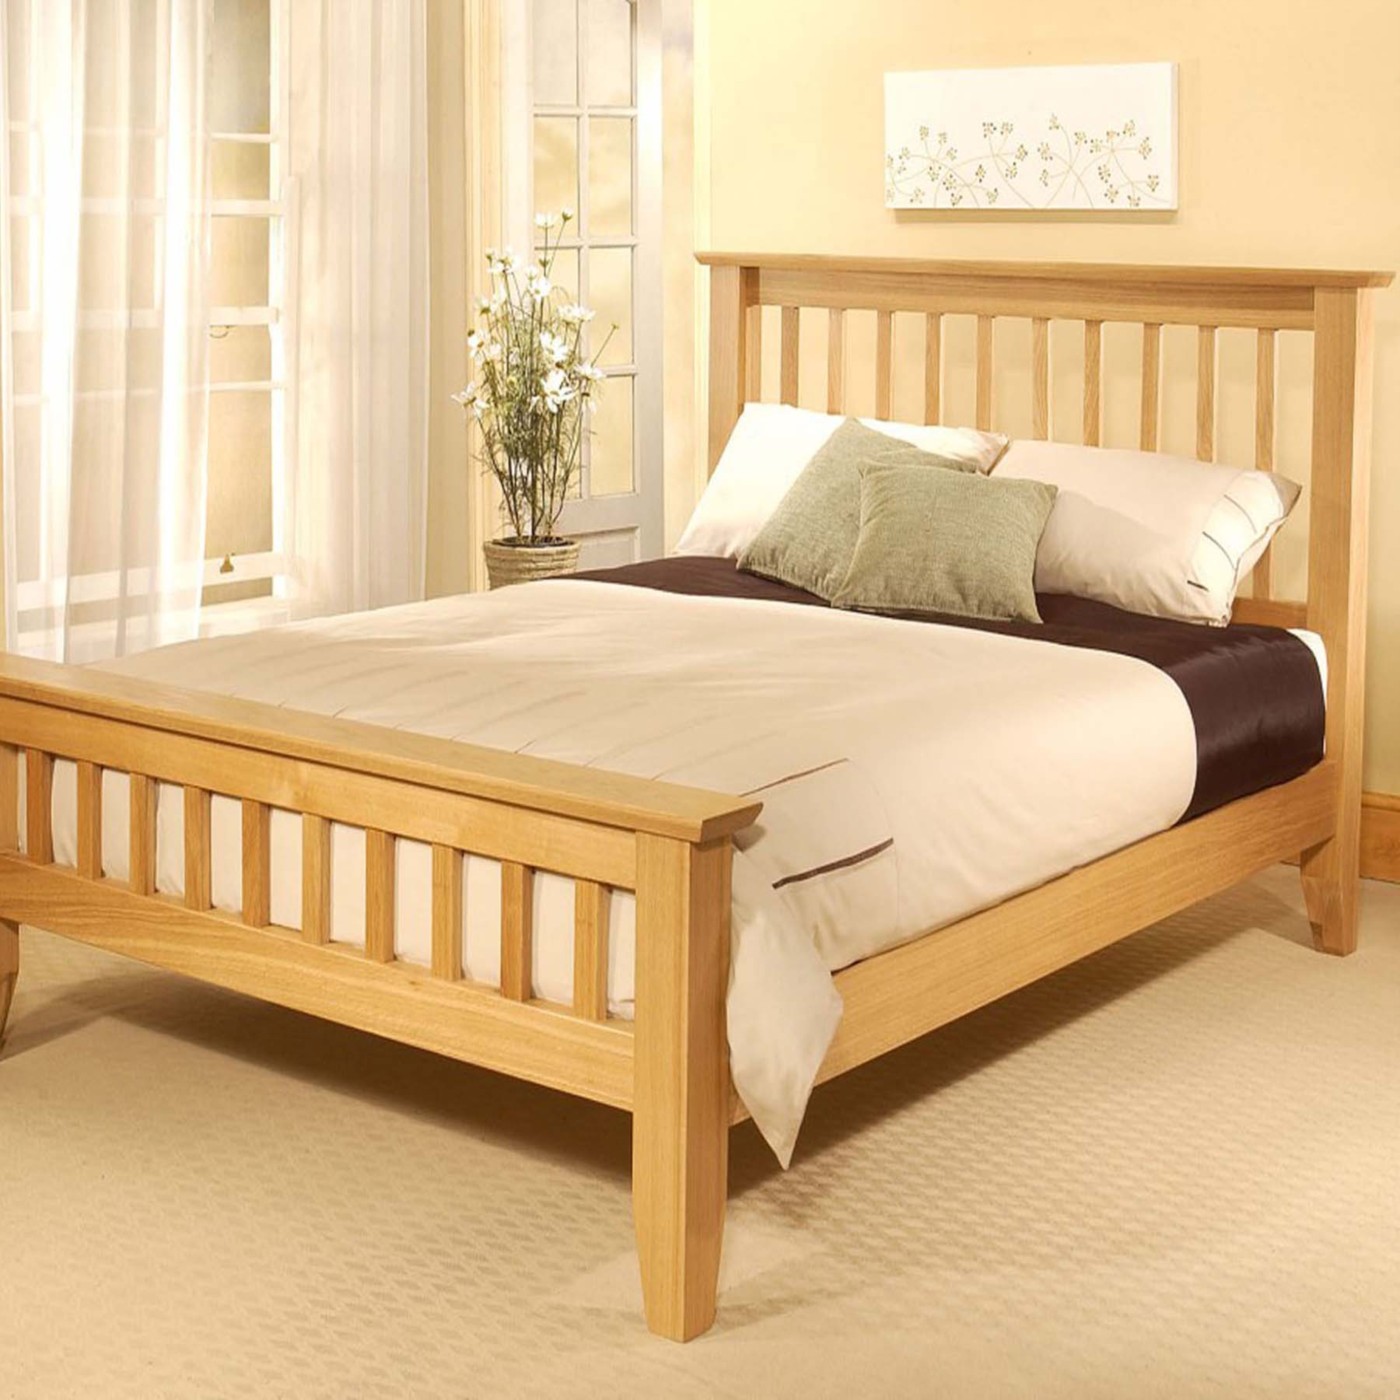 PDF Diy wooden bed frame designs DIY Free Plans Download 